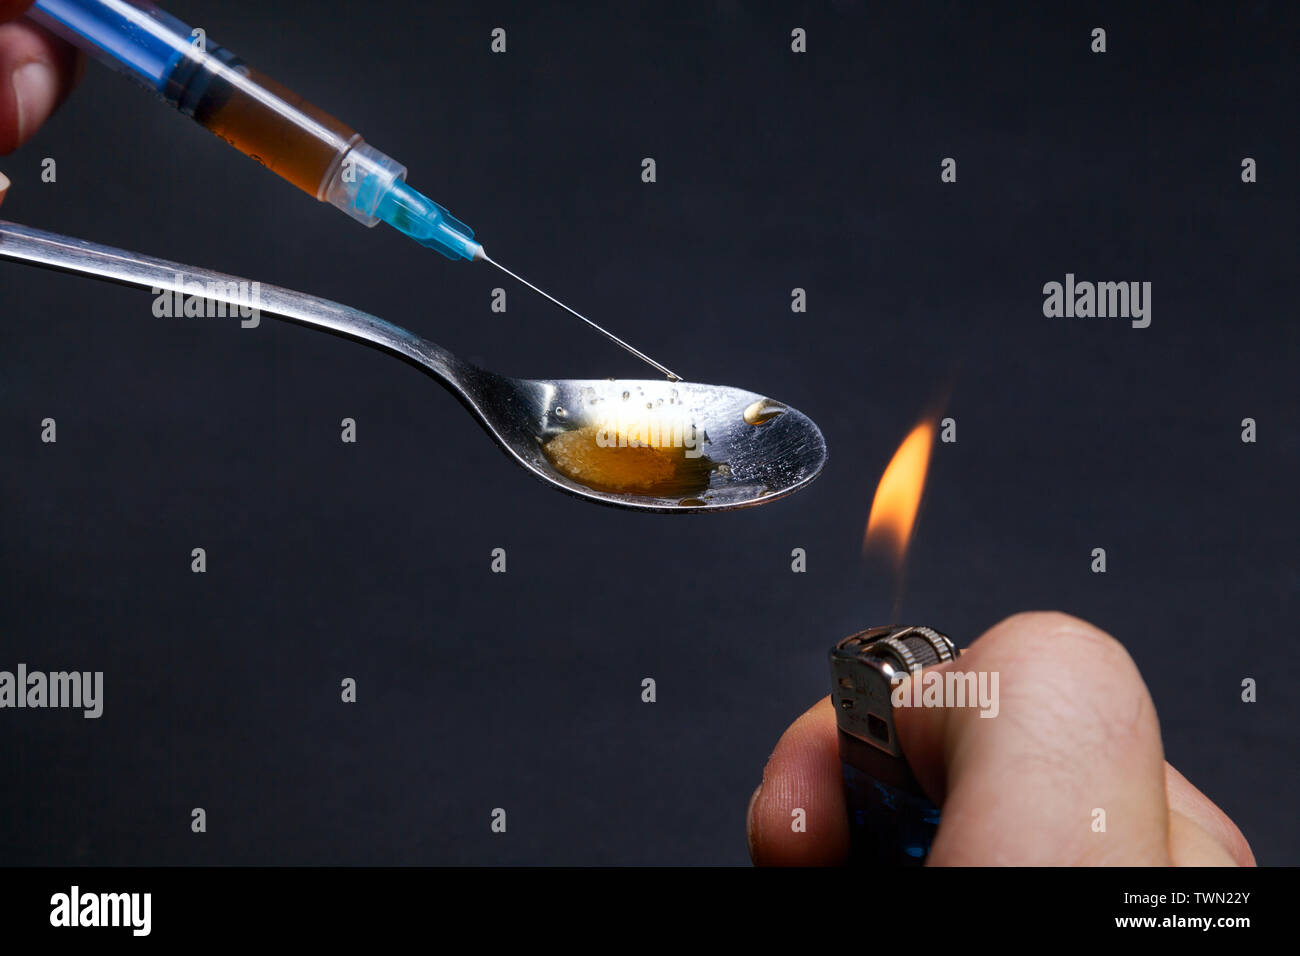 Cucchiaio di cocaina immagini e fotografie stock ad alta risoluzione - Alamy